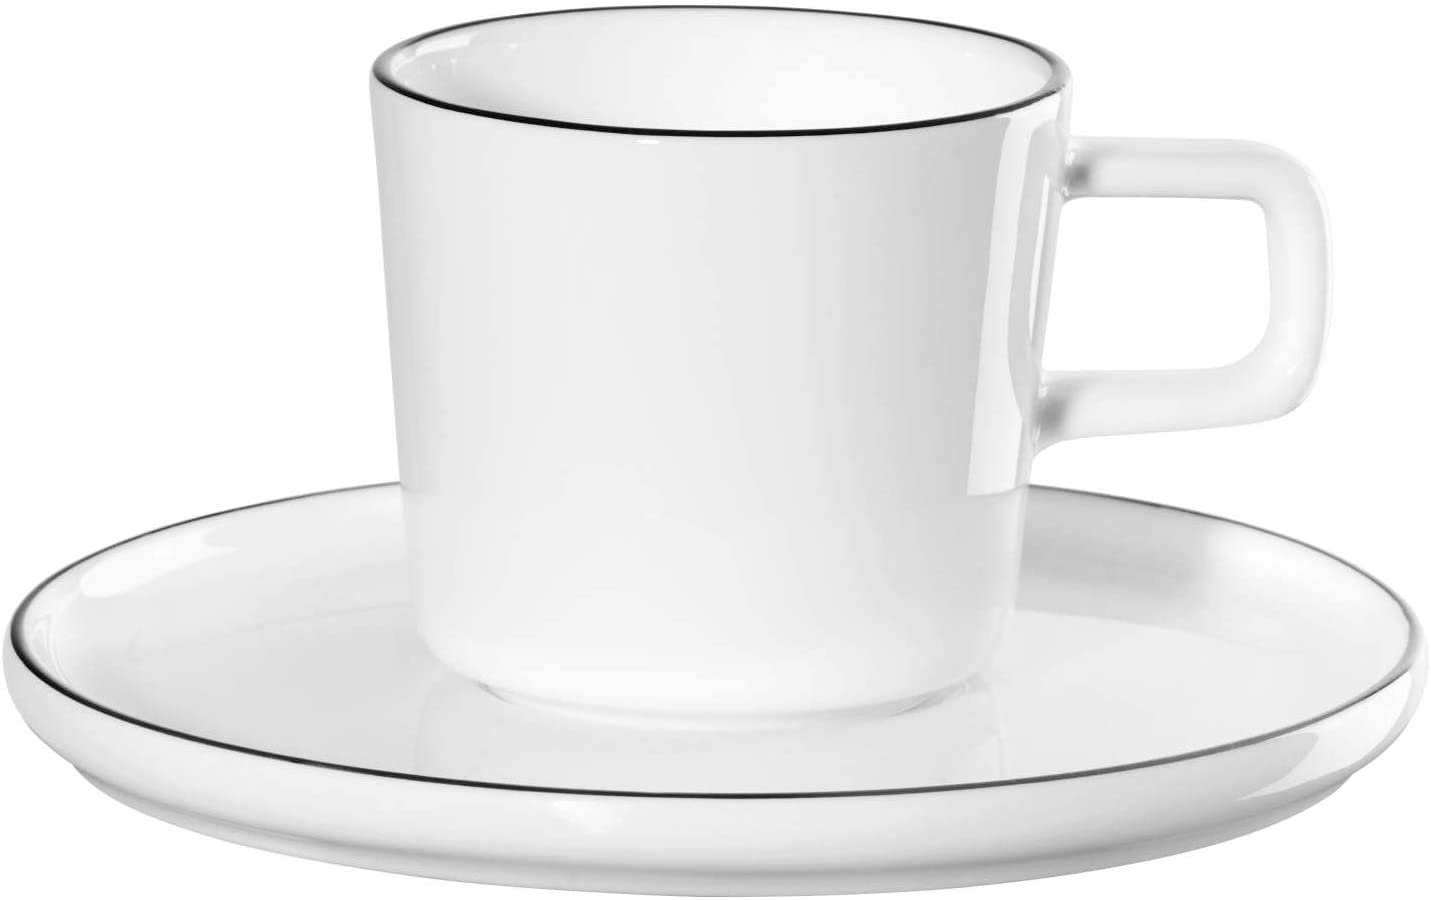 ASA Espresso cup with saucer, oco ligne noi D. 5.8 cm H. 5.8 cm, 0.08 l.